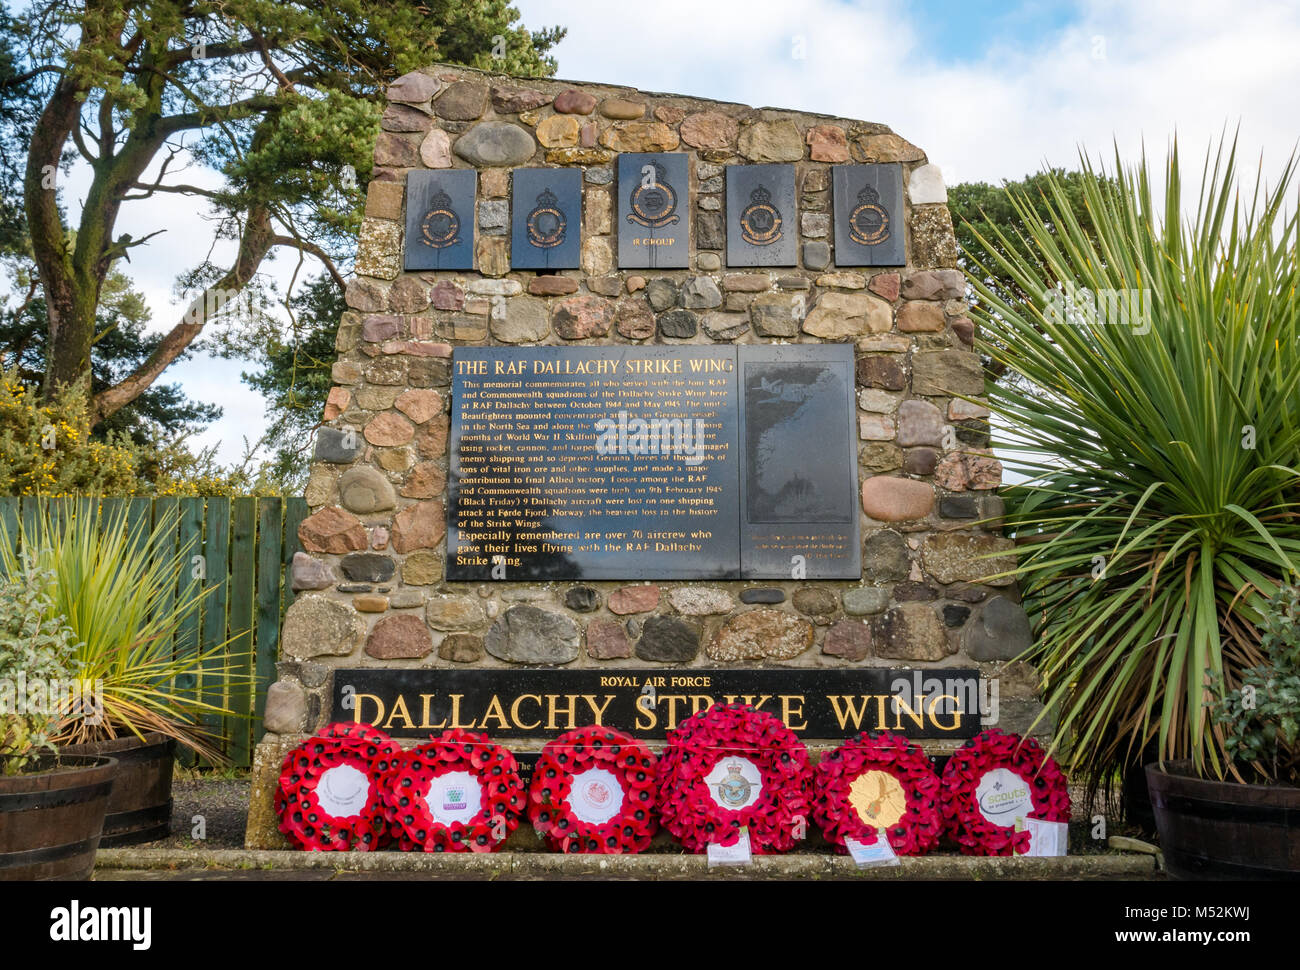 Monument à la Royal Air Force RAF aviateurs tués en grève Dallachy, Aile Noire et attaque vendredi en Norvège, Bogmuir, Moray, Ecosse, Royaume-Uni Banque D'Images